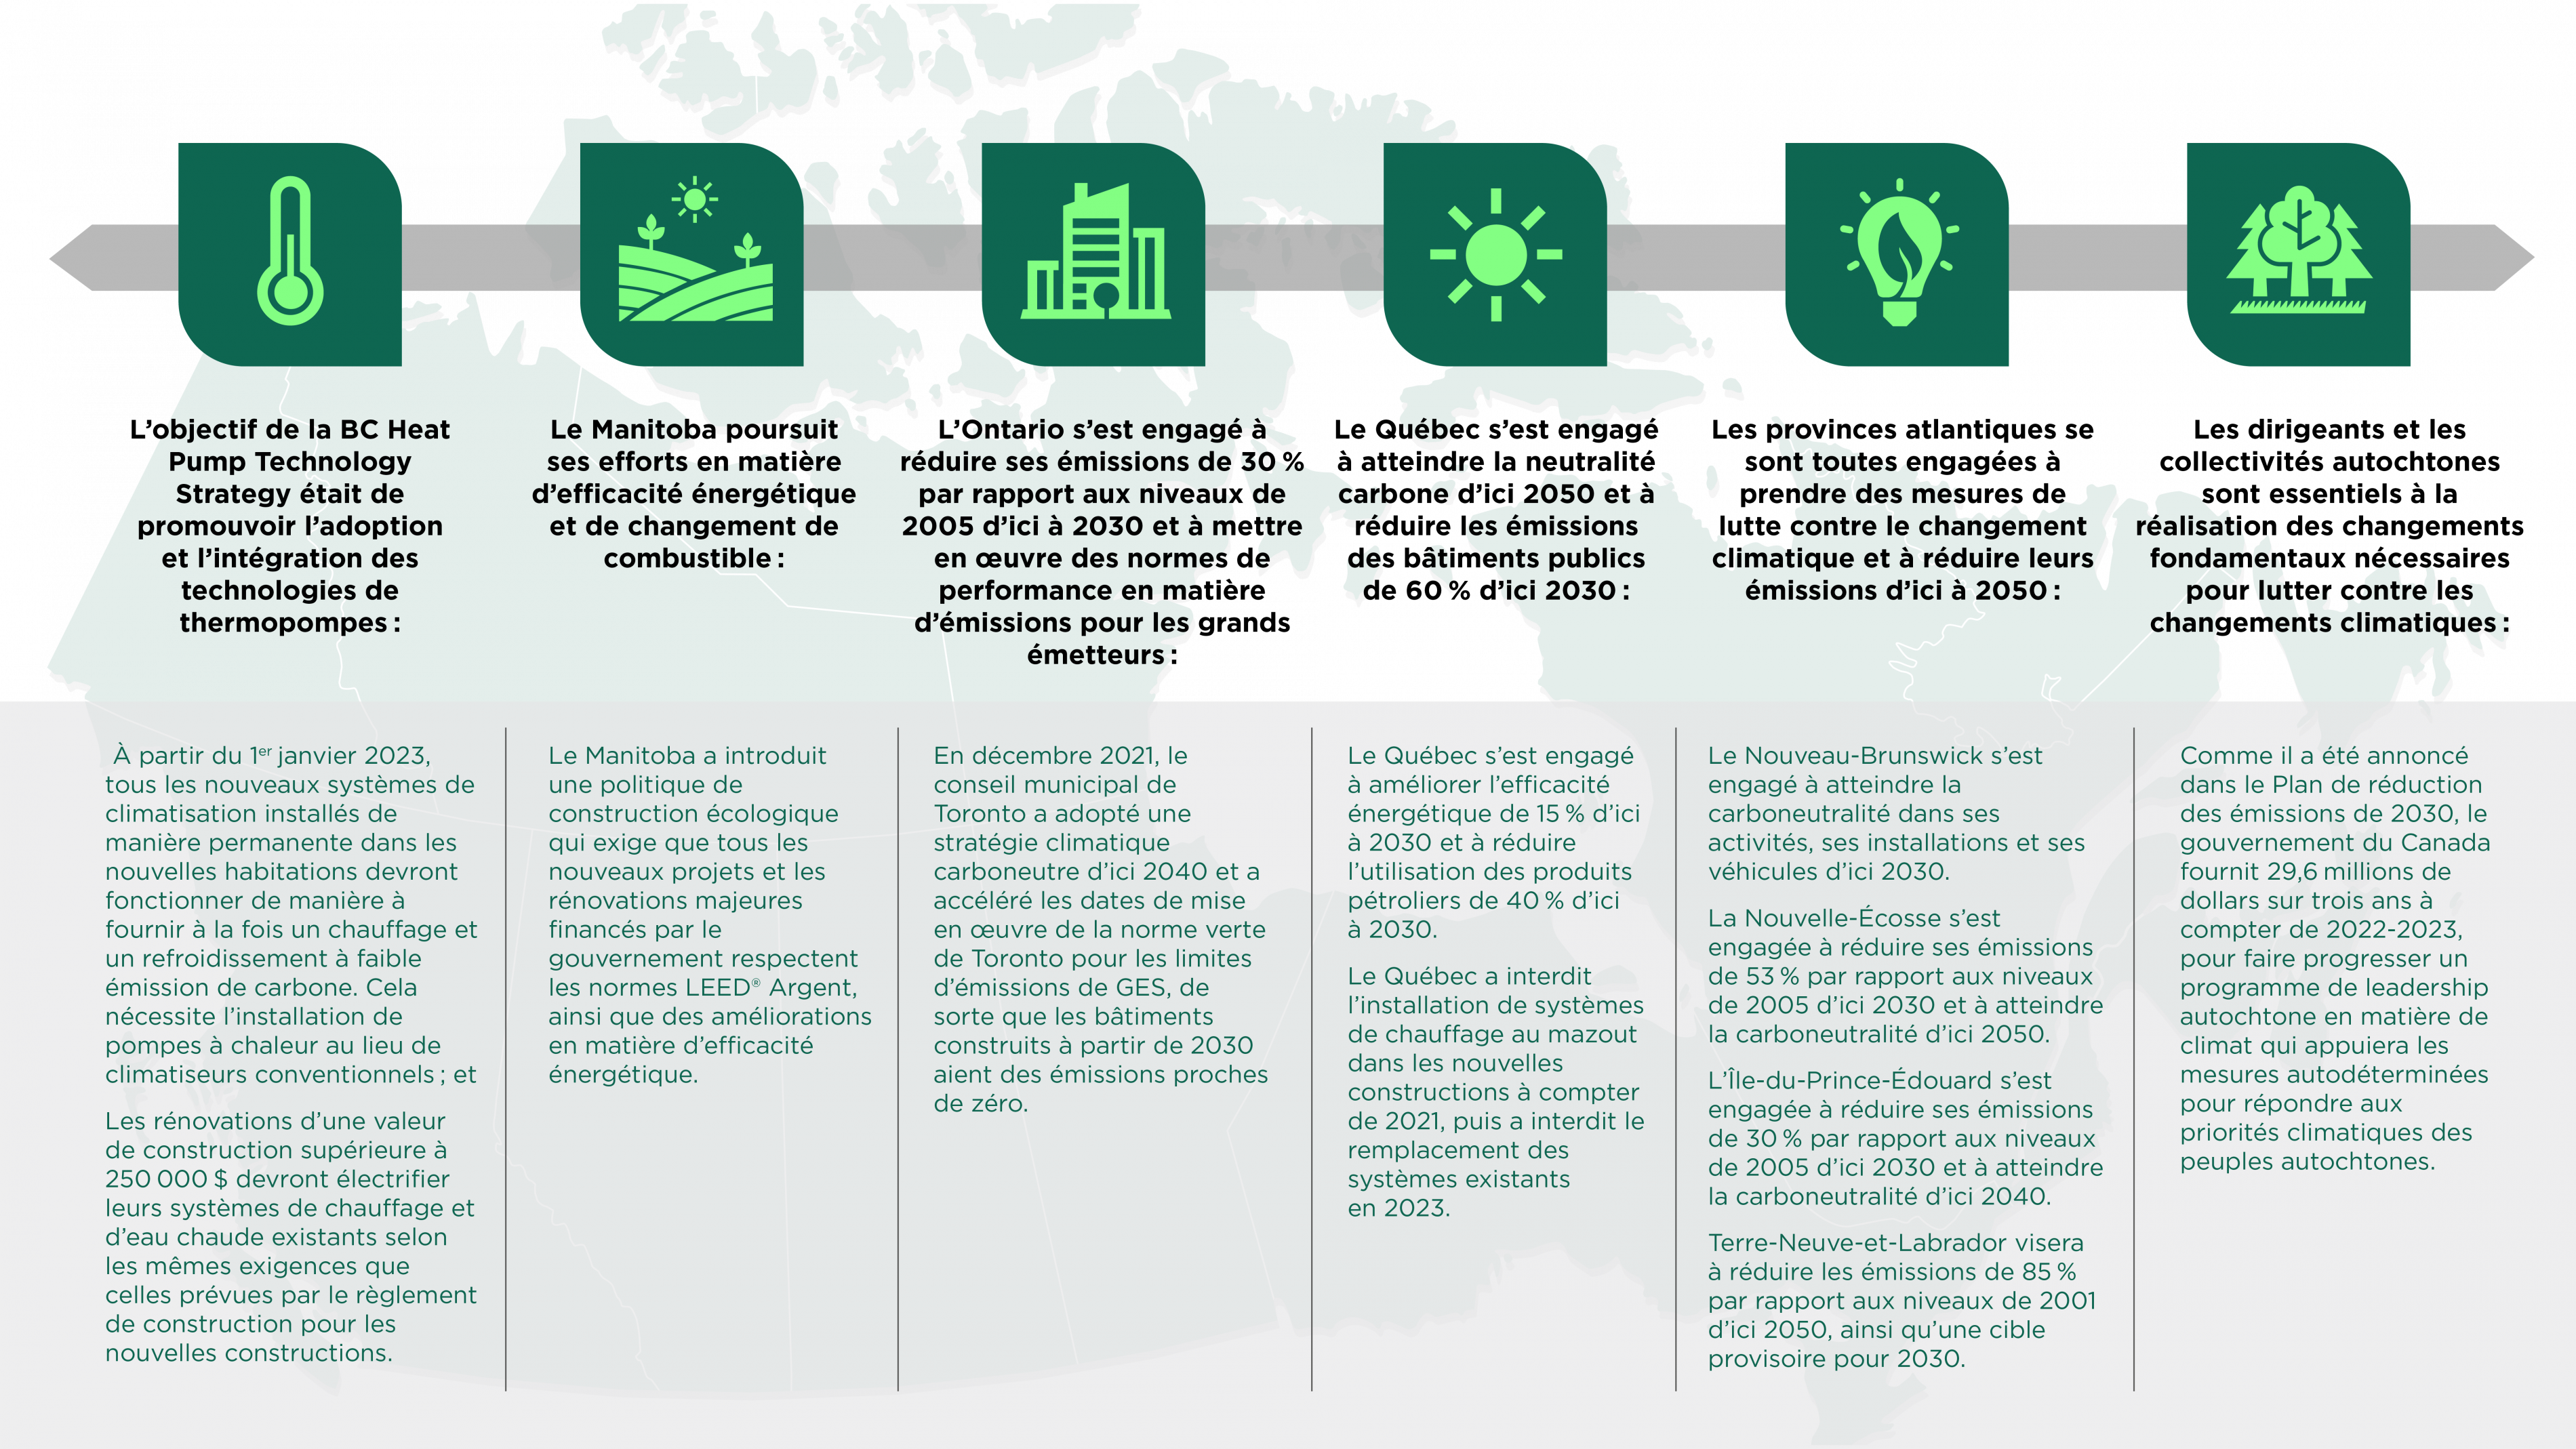 Infographie illustrant des exemples choisis de leadership et d’innovation en matière de climat dans différentes régions du Canada.